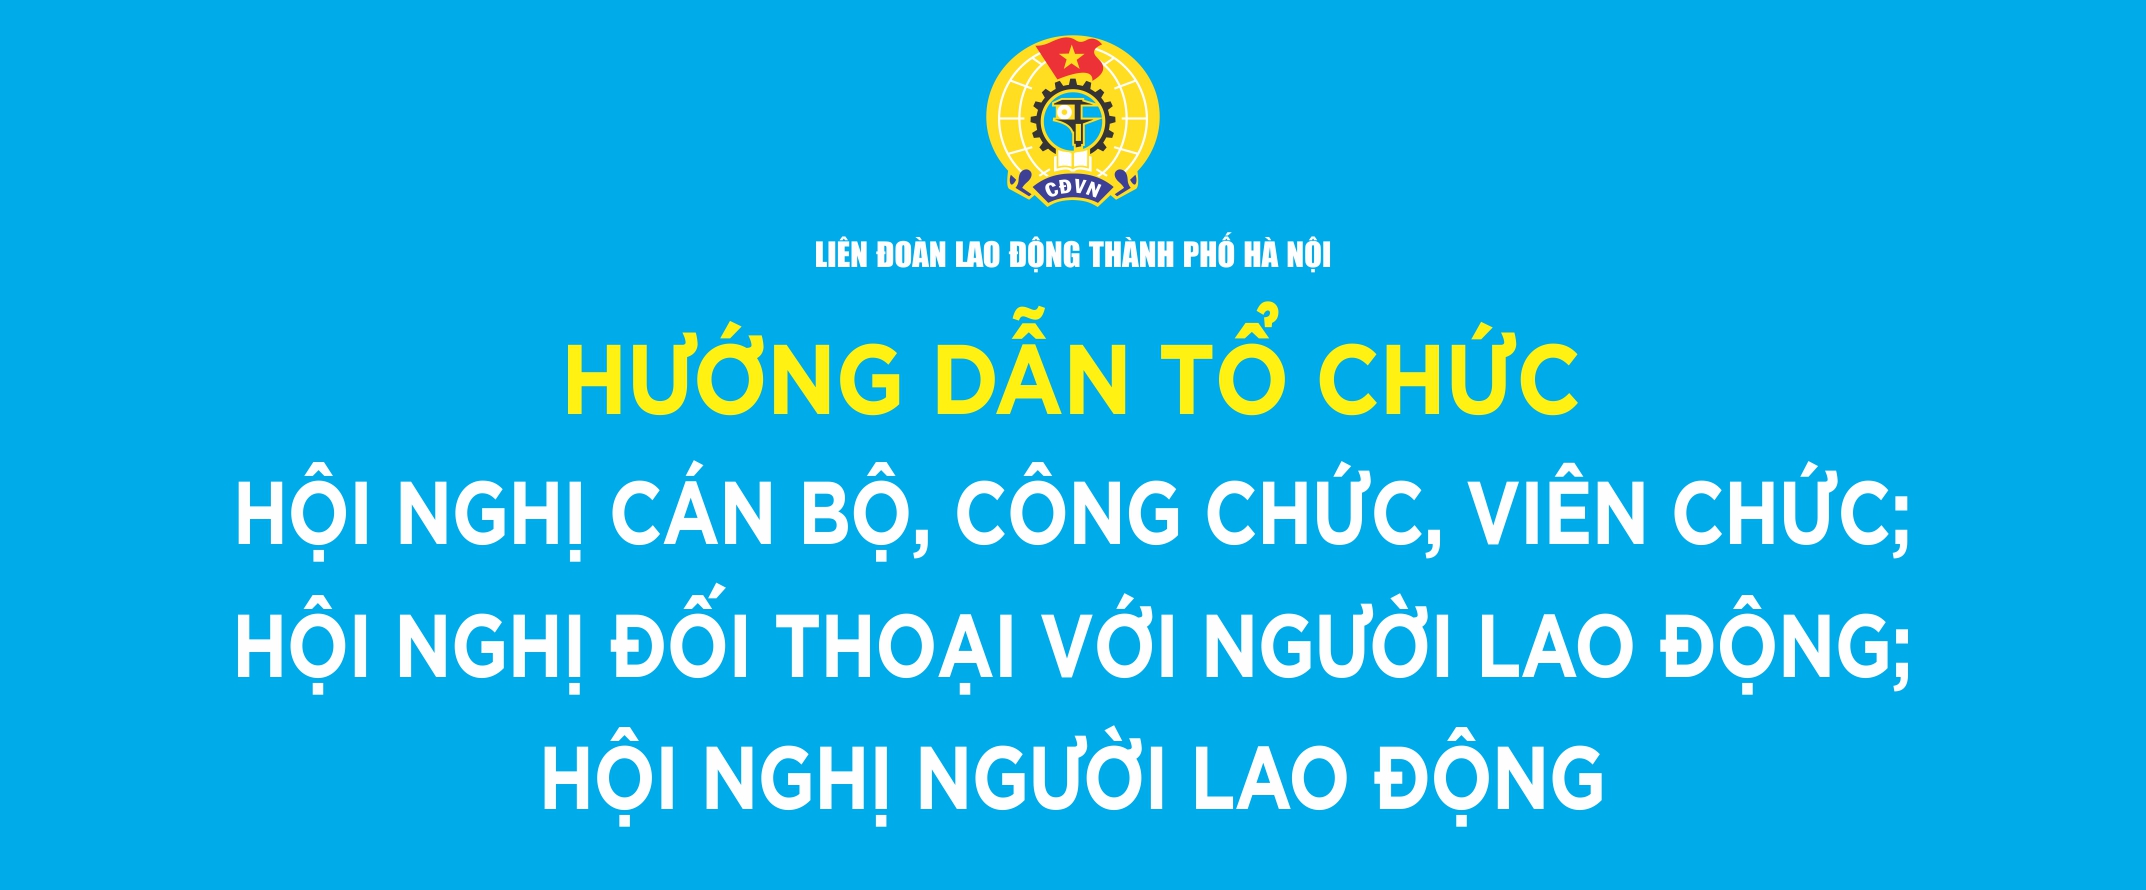 huong-dan-to-chuc-hoi-nghi-can-bo-cong-chuc-vien-chuc